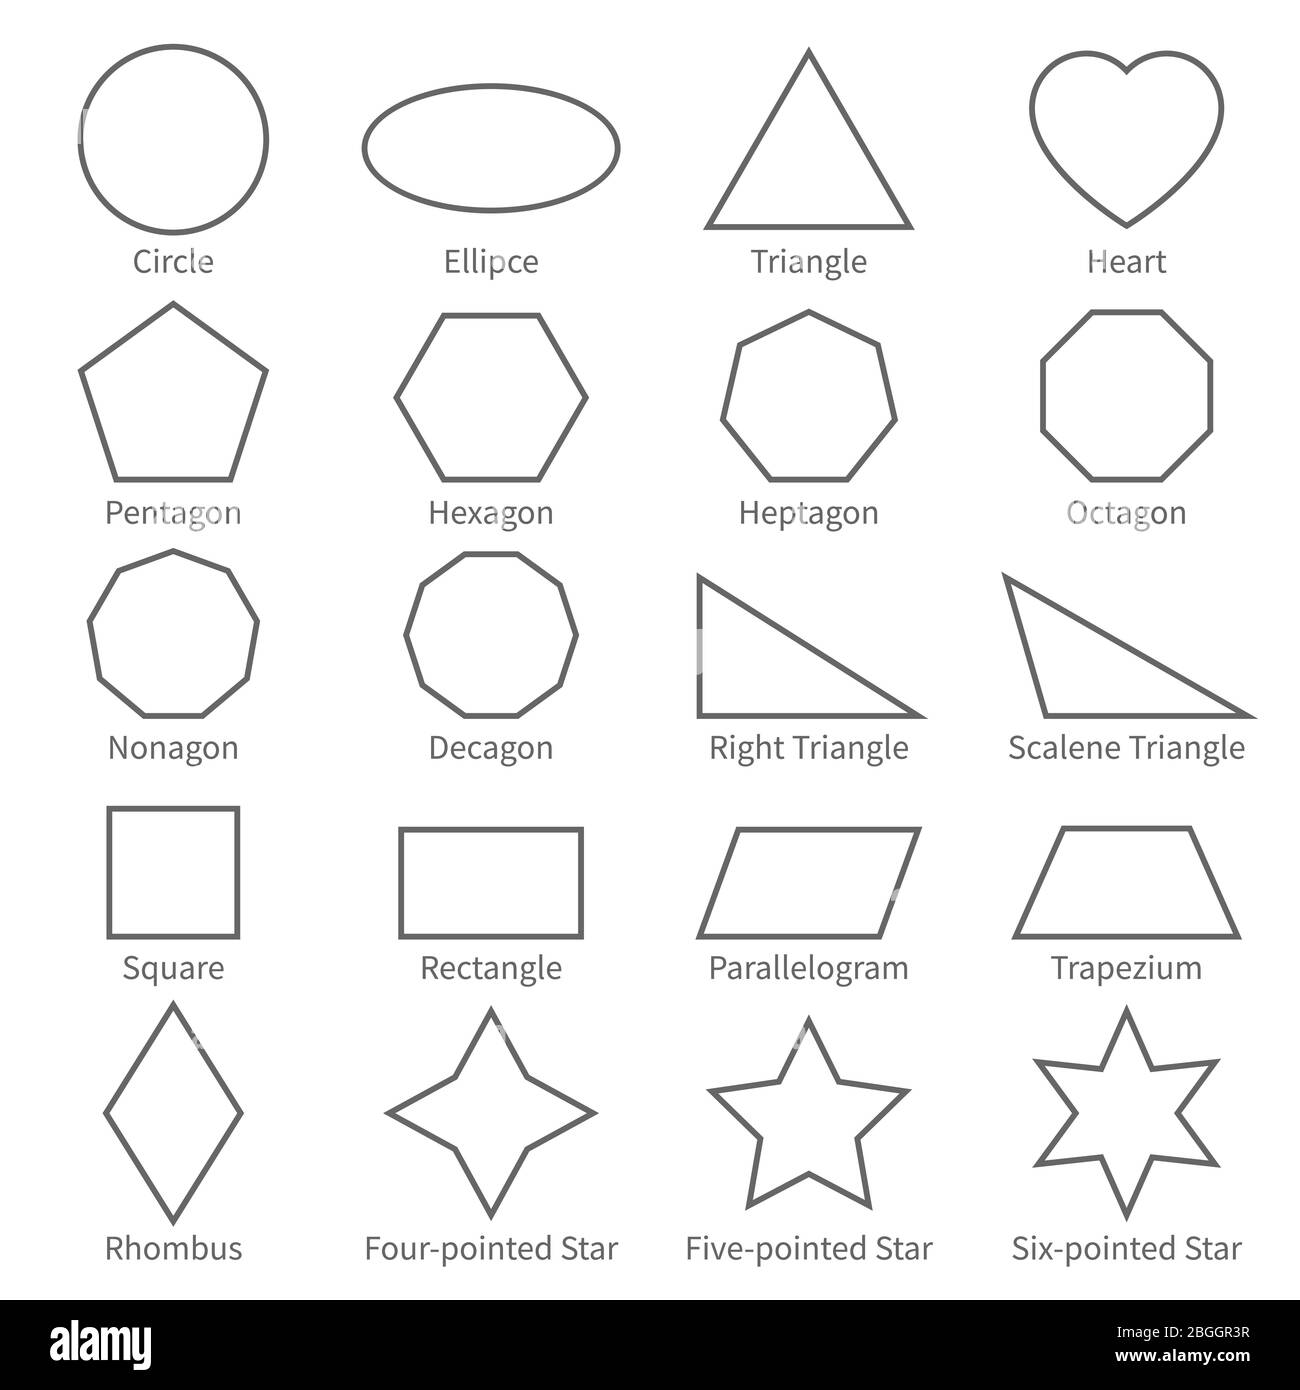 Einfache geometrische Kontur flache Formen. Pädagogische Geometrie Vektor-Diagramm für Kinder. Vektorquadrat und Rechteck, Ellipse und Dreieck Illustration Stock Vektor